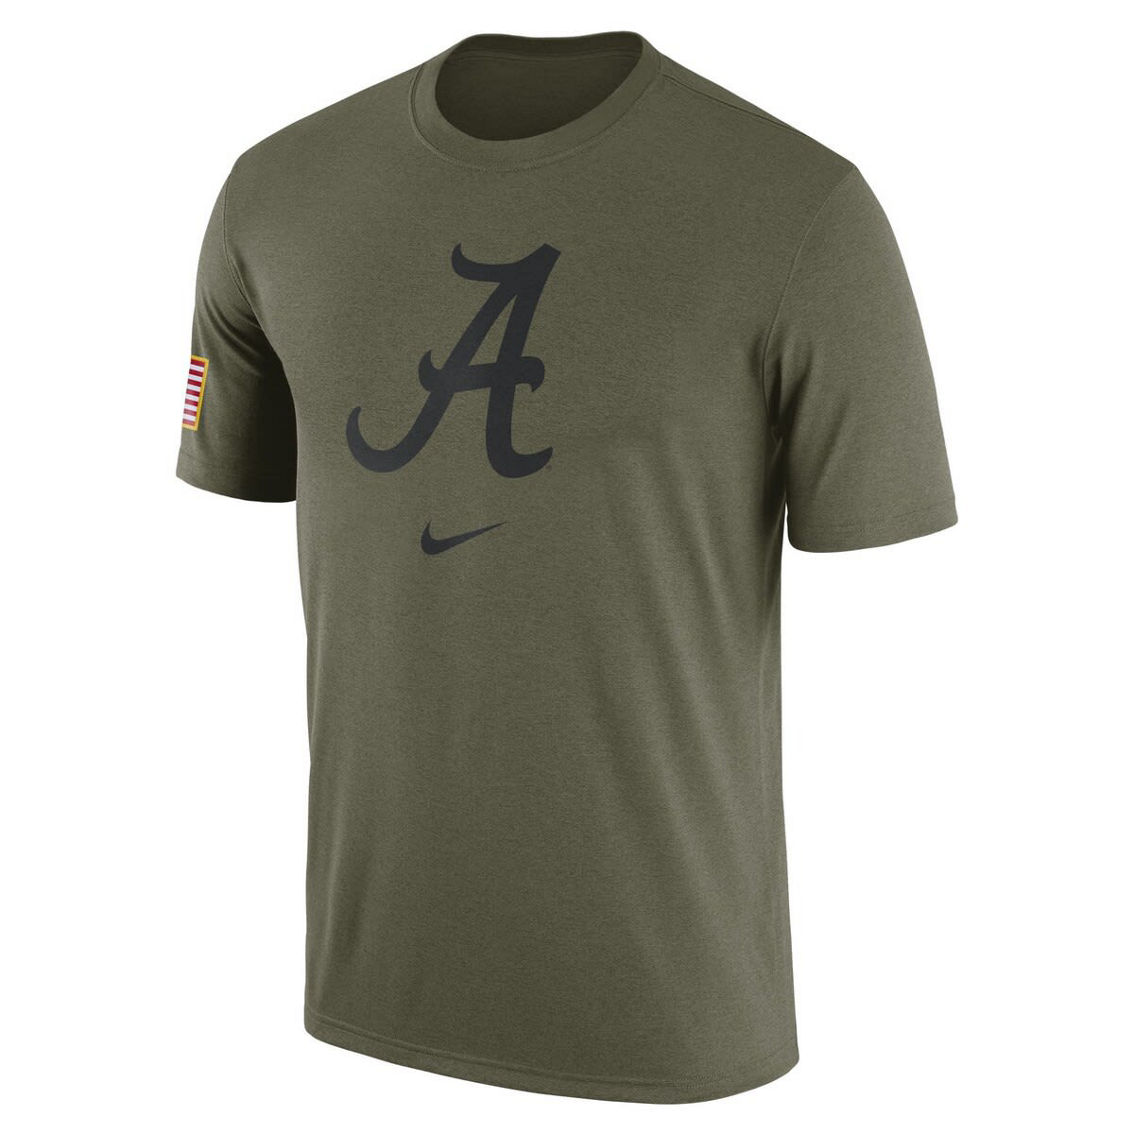 Nike Men's Olive Alabama Crimson Tide Military Pack T-Shirt - Image 3 of 4